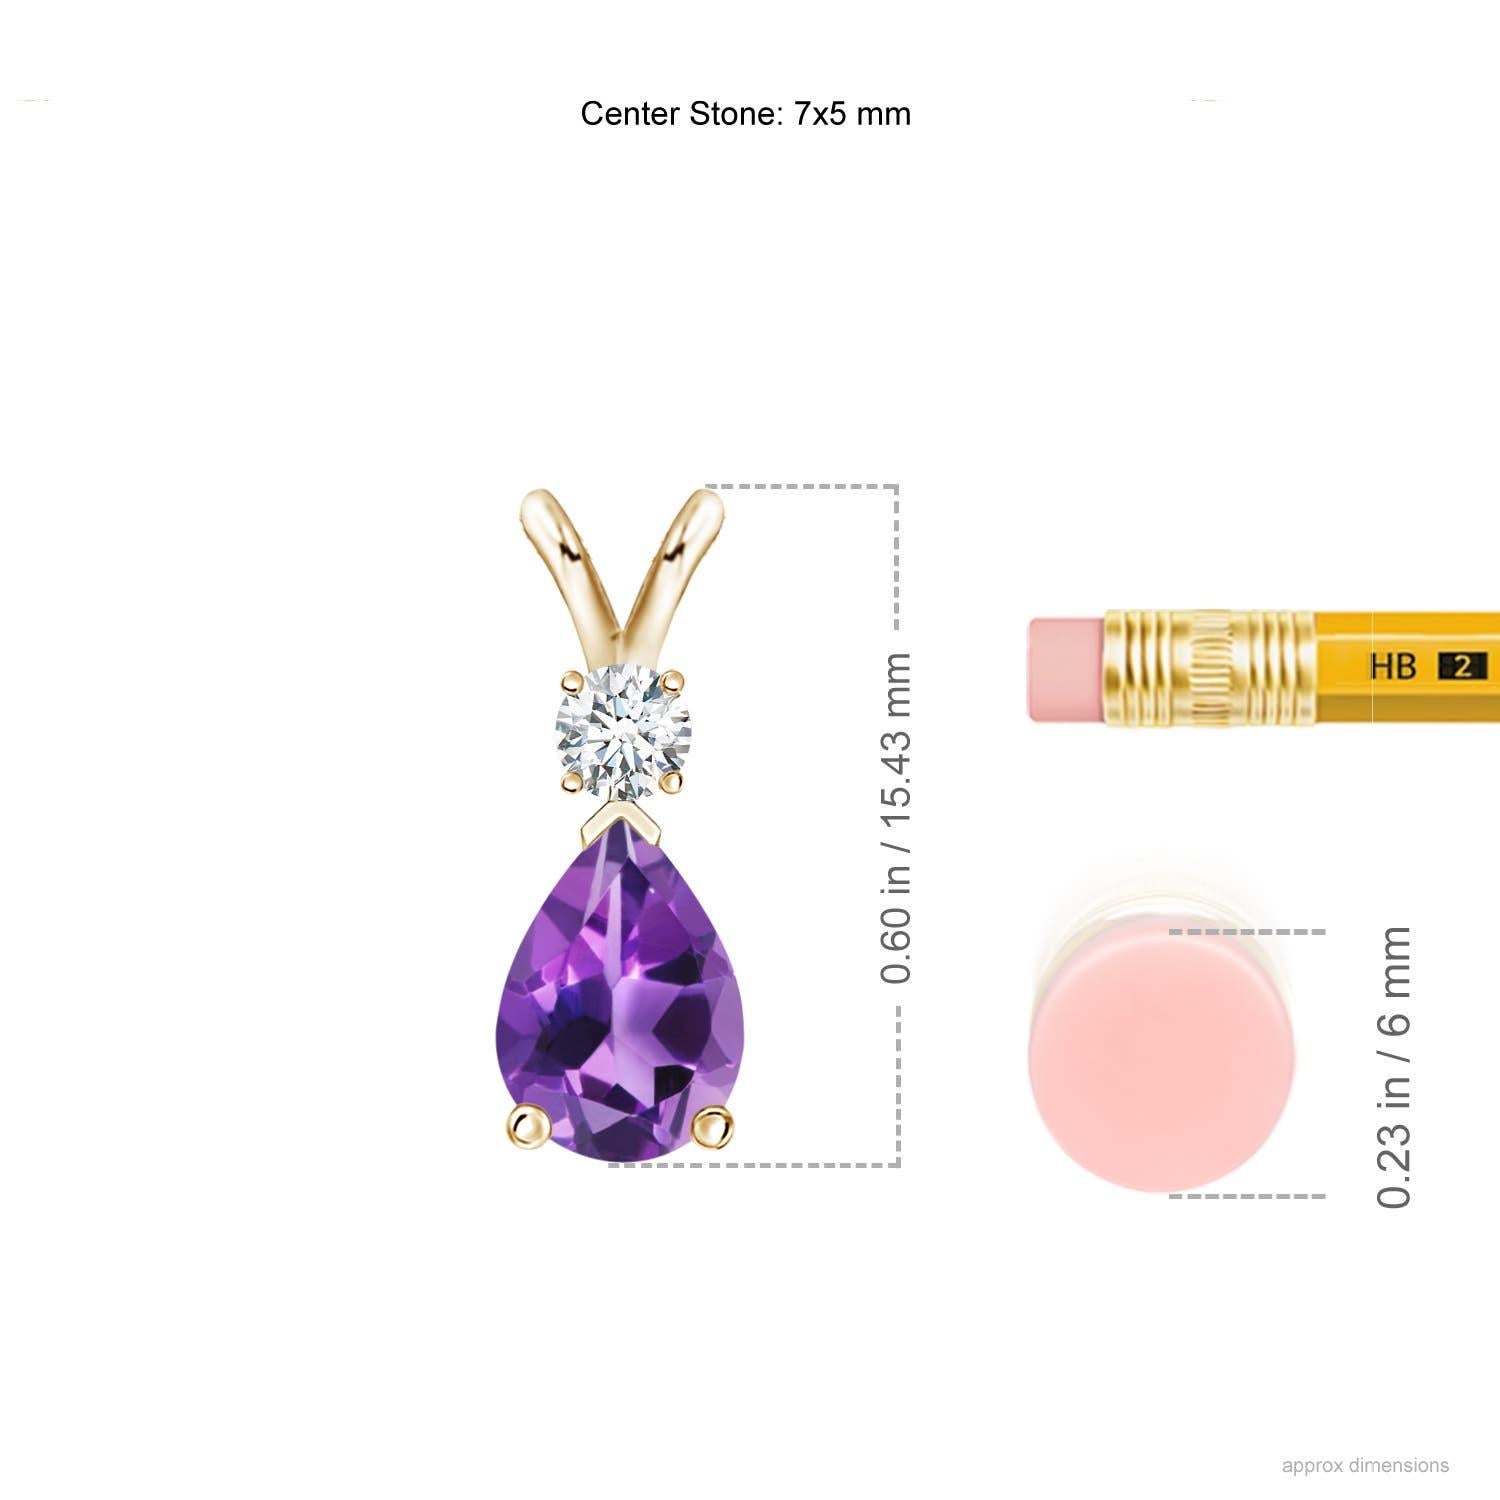 Une améthyste violette profonde en forme de poire est fixée dans une monture à griffes et agrémentée d'un diamant sur le dessus. Simple mais éblouissant, ce pendentif en forme de larme d'améthyste avec une balle en V est sculpté dans de l'or jaune